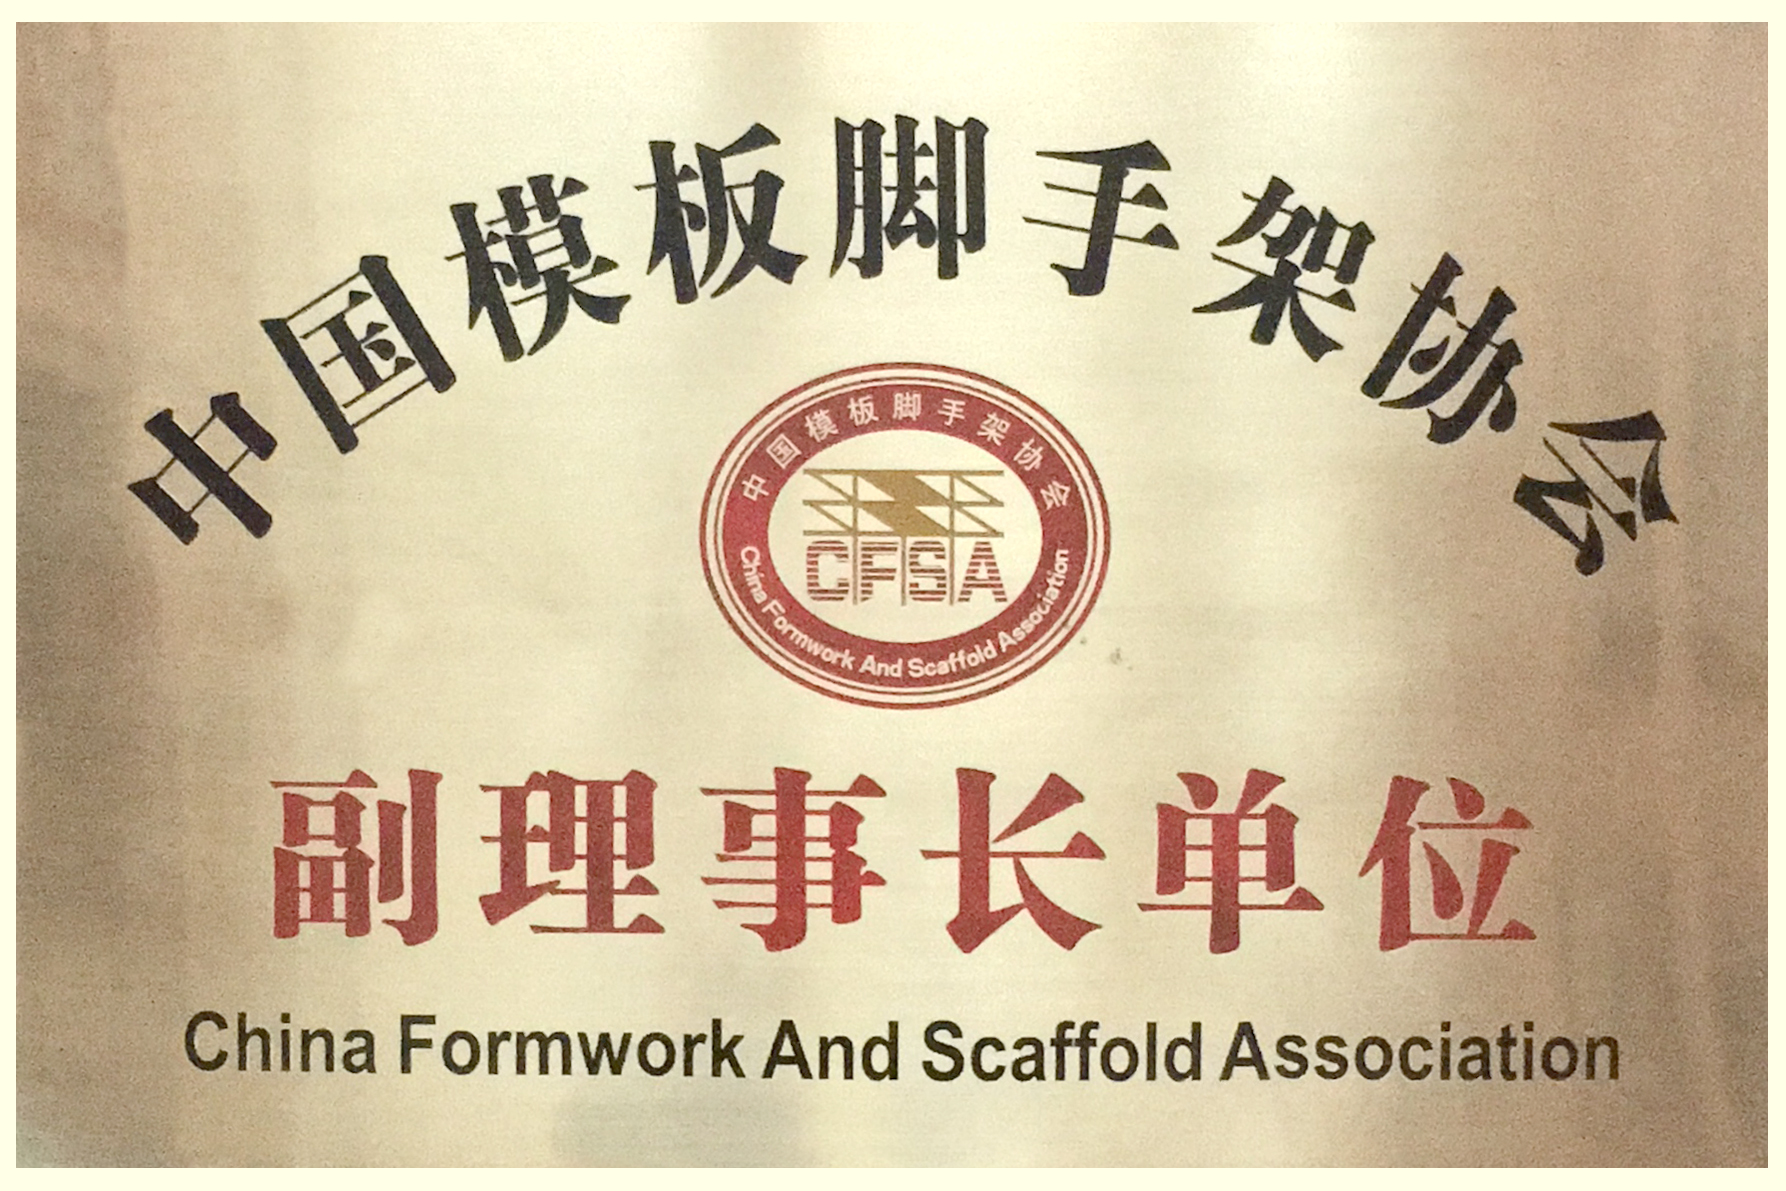 金亨木业有限公司被中国模架协会评为“副理事长单位”